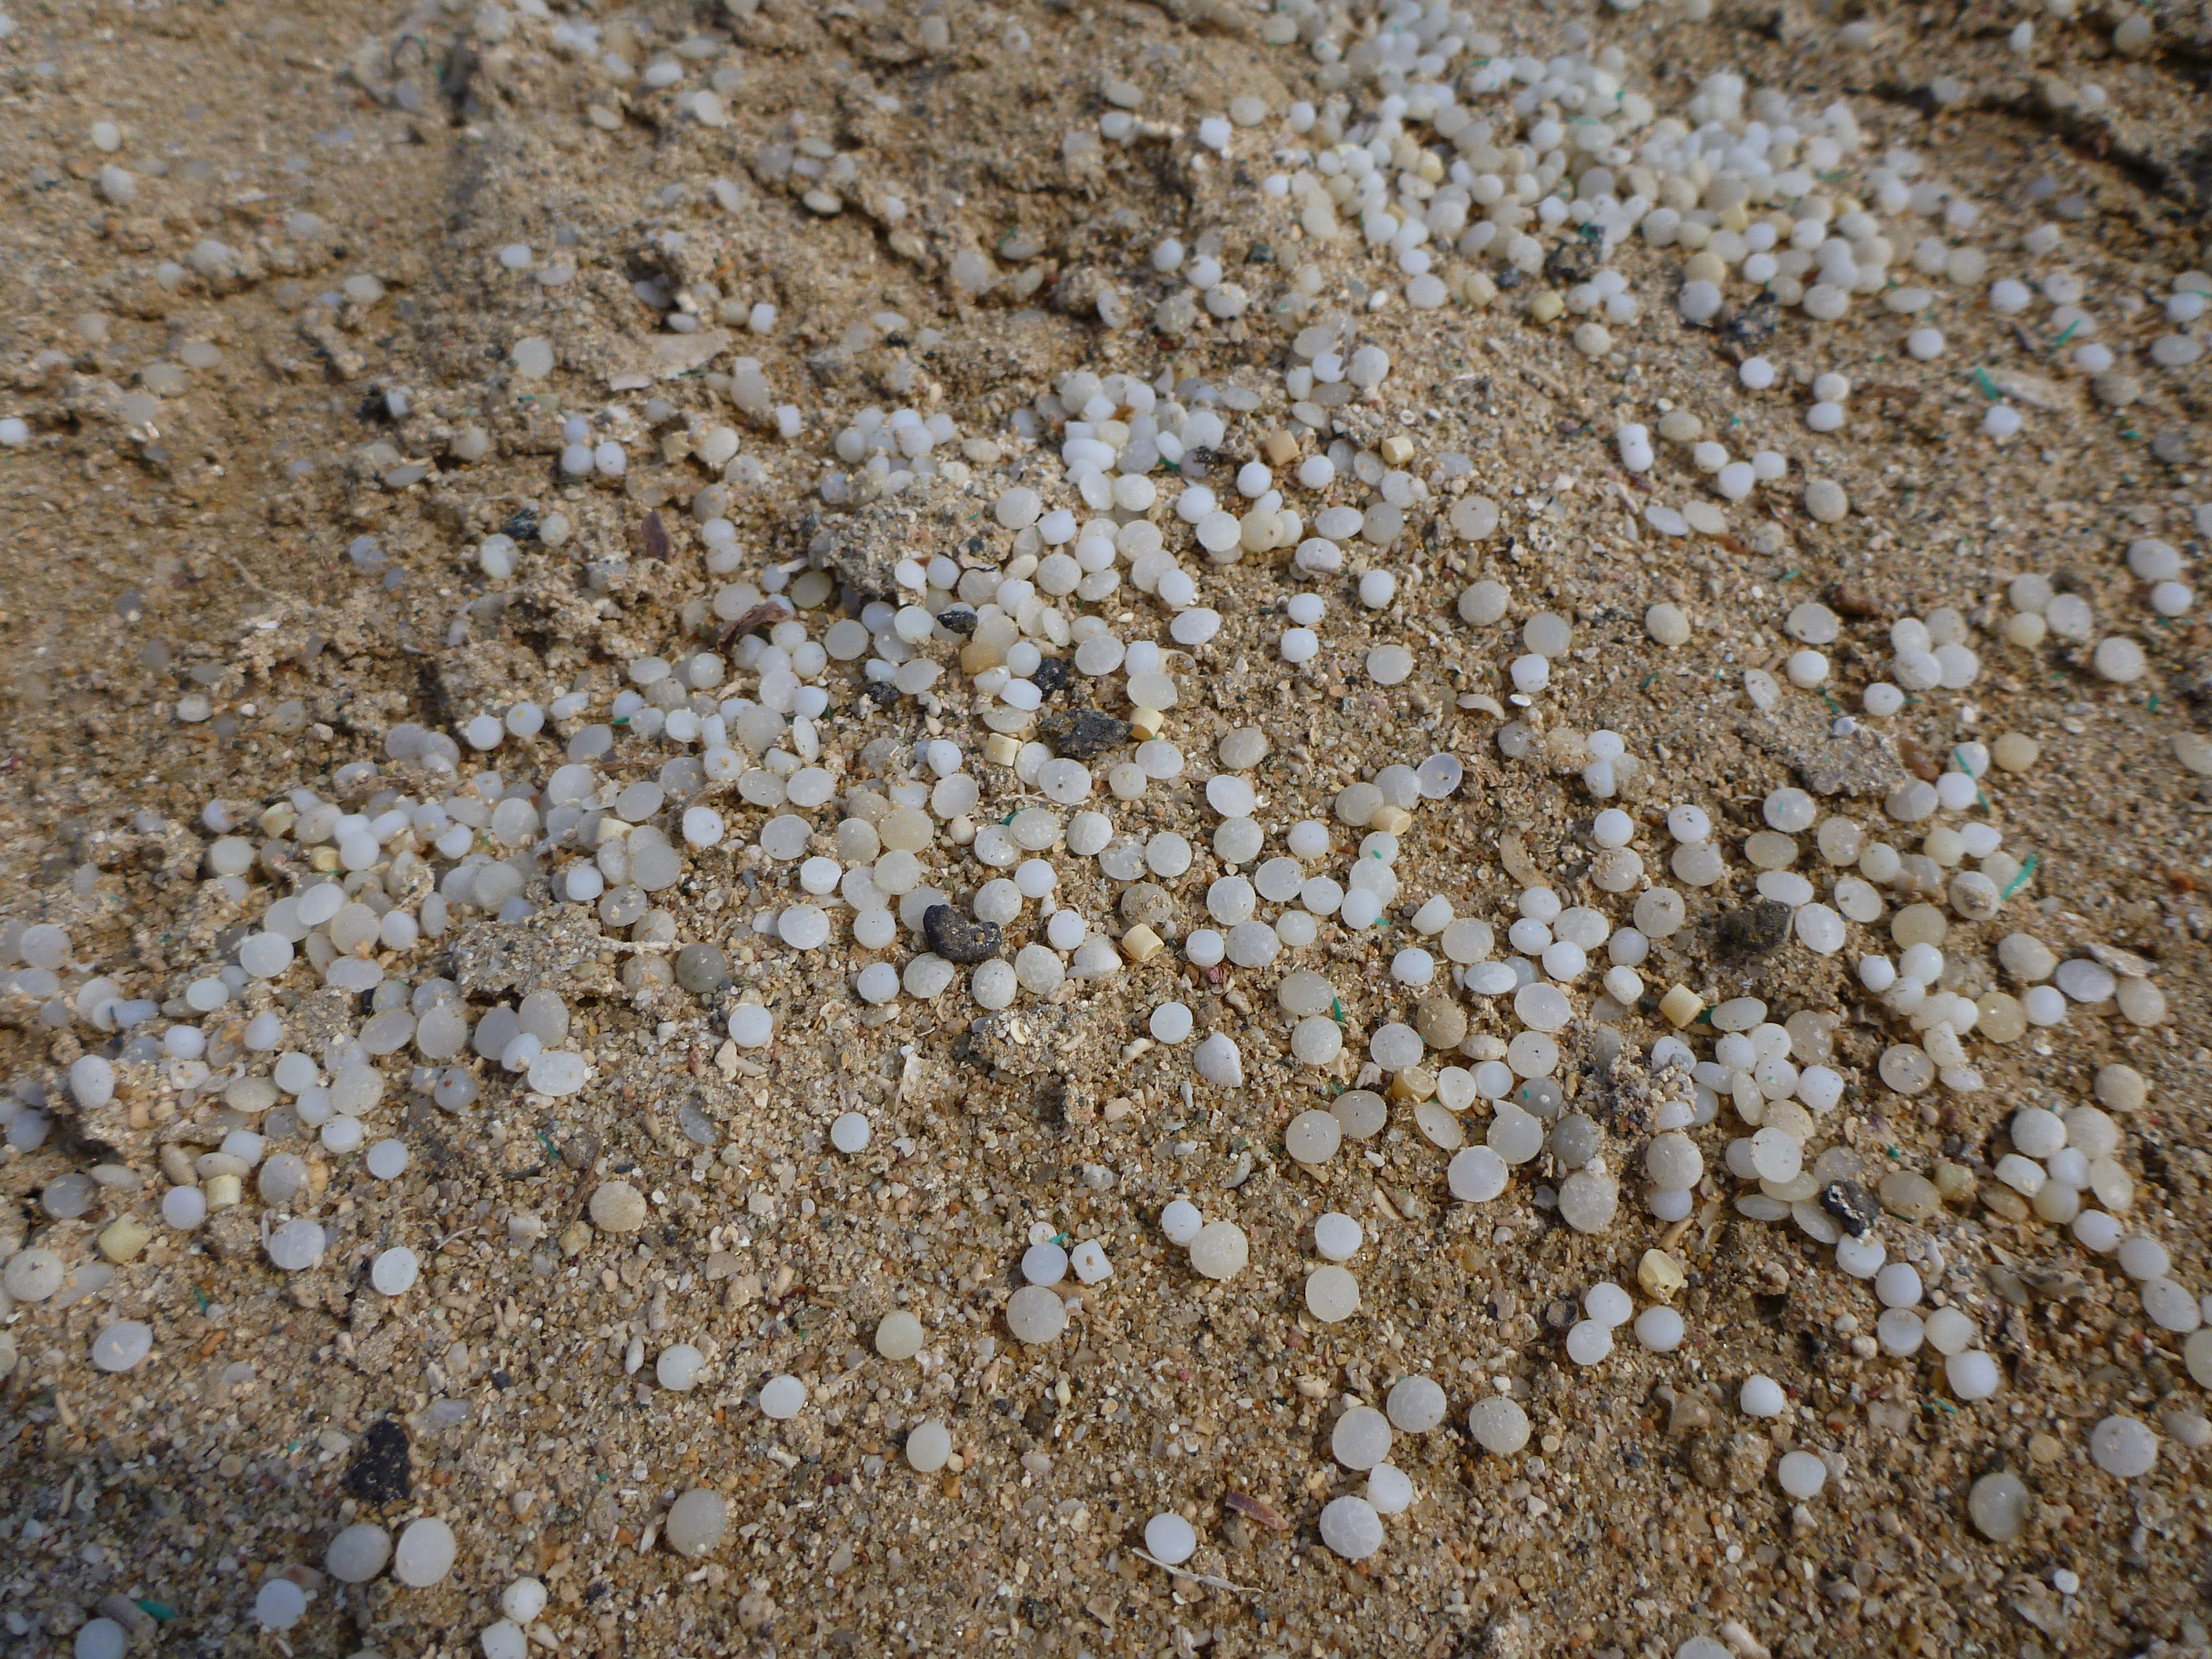 Plastic_pellets_from_ship_wreck_at_beach_near_Abu_Ghusun